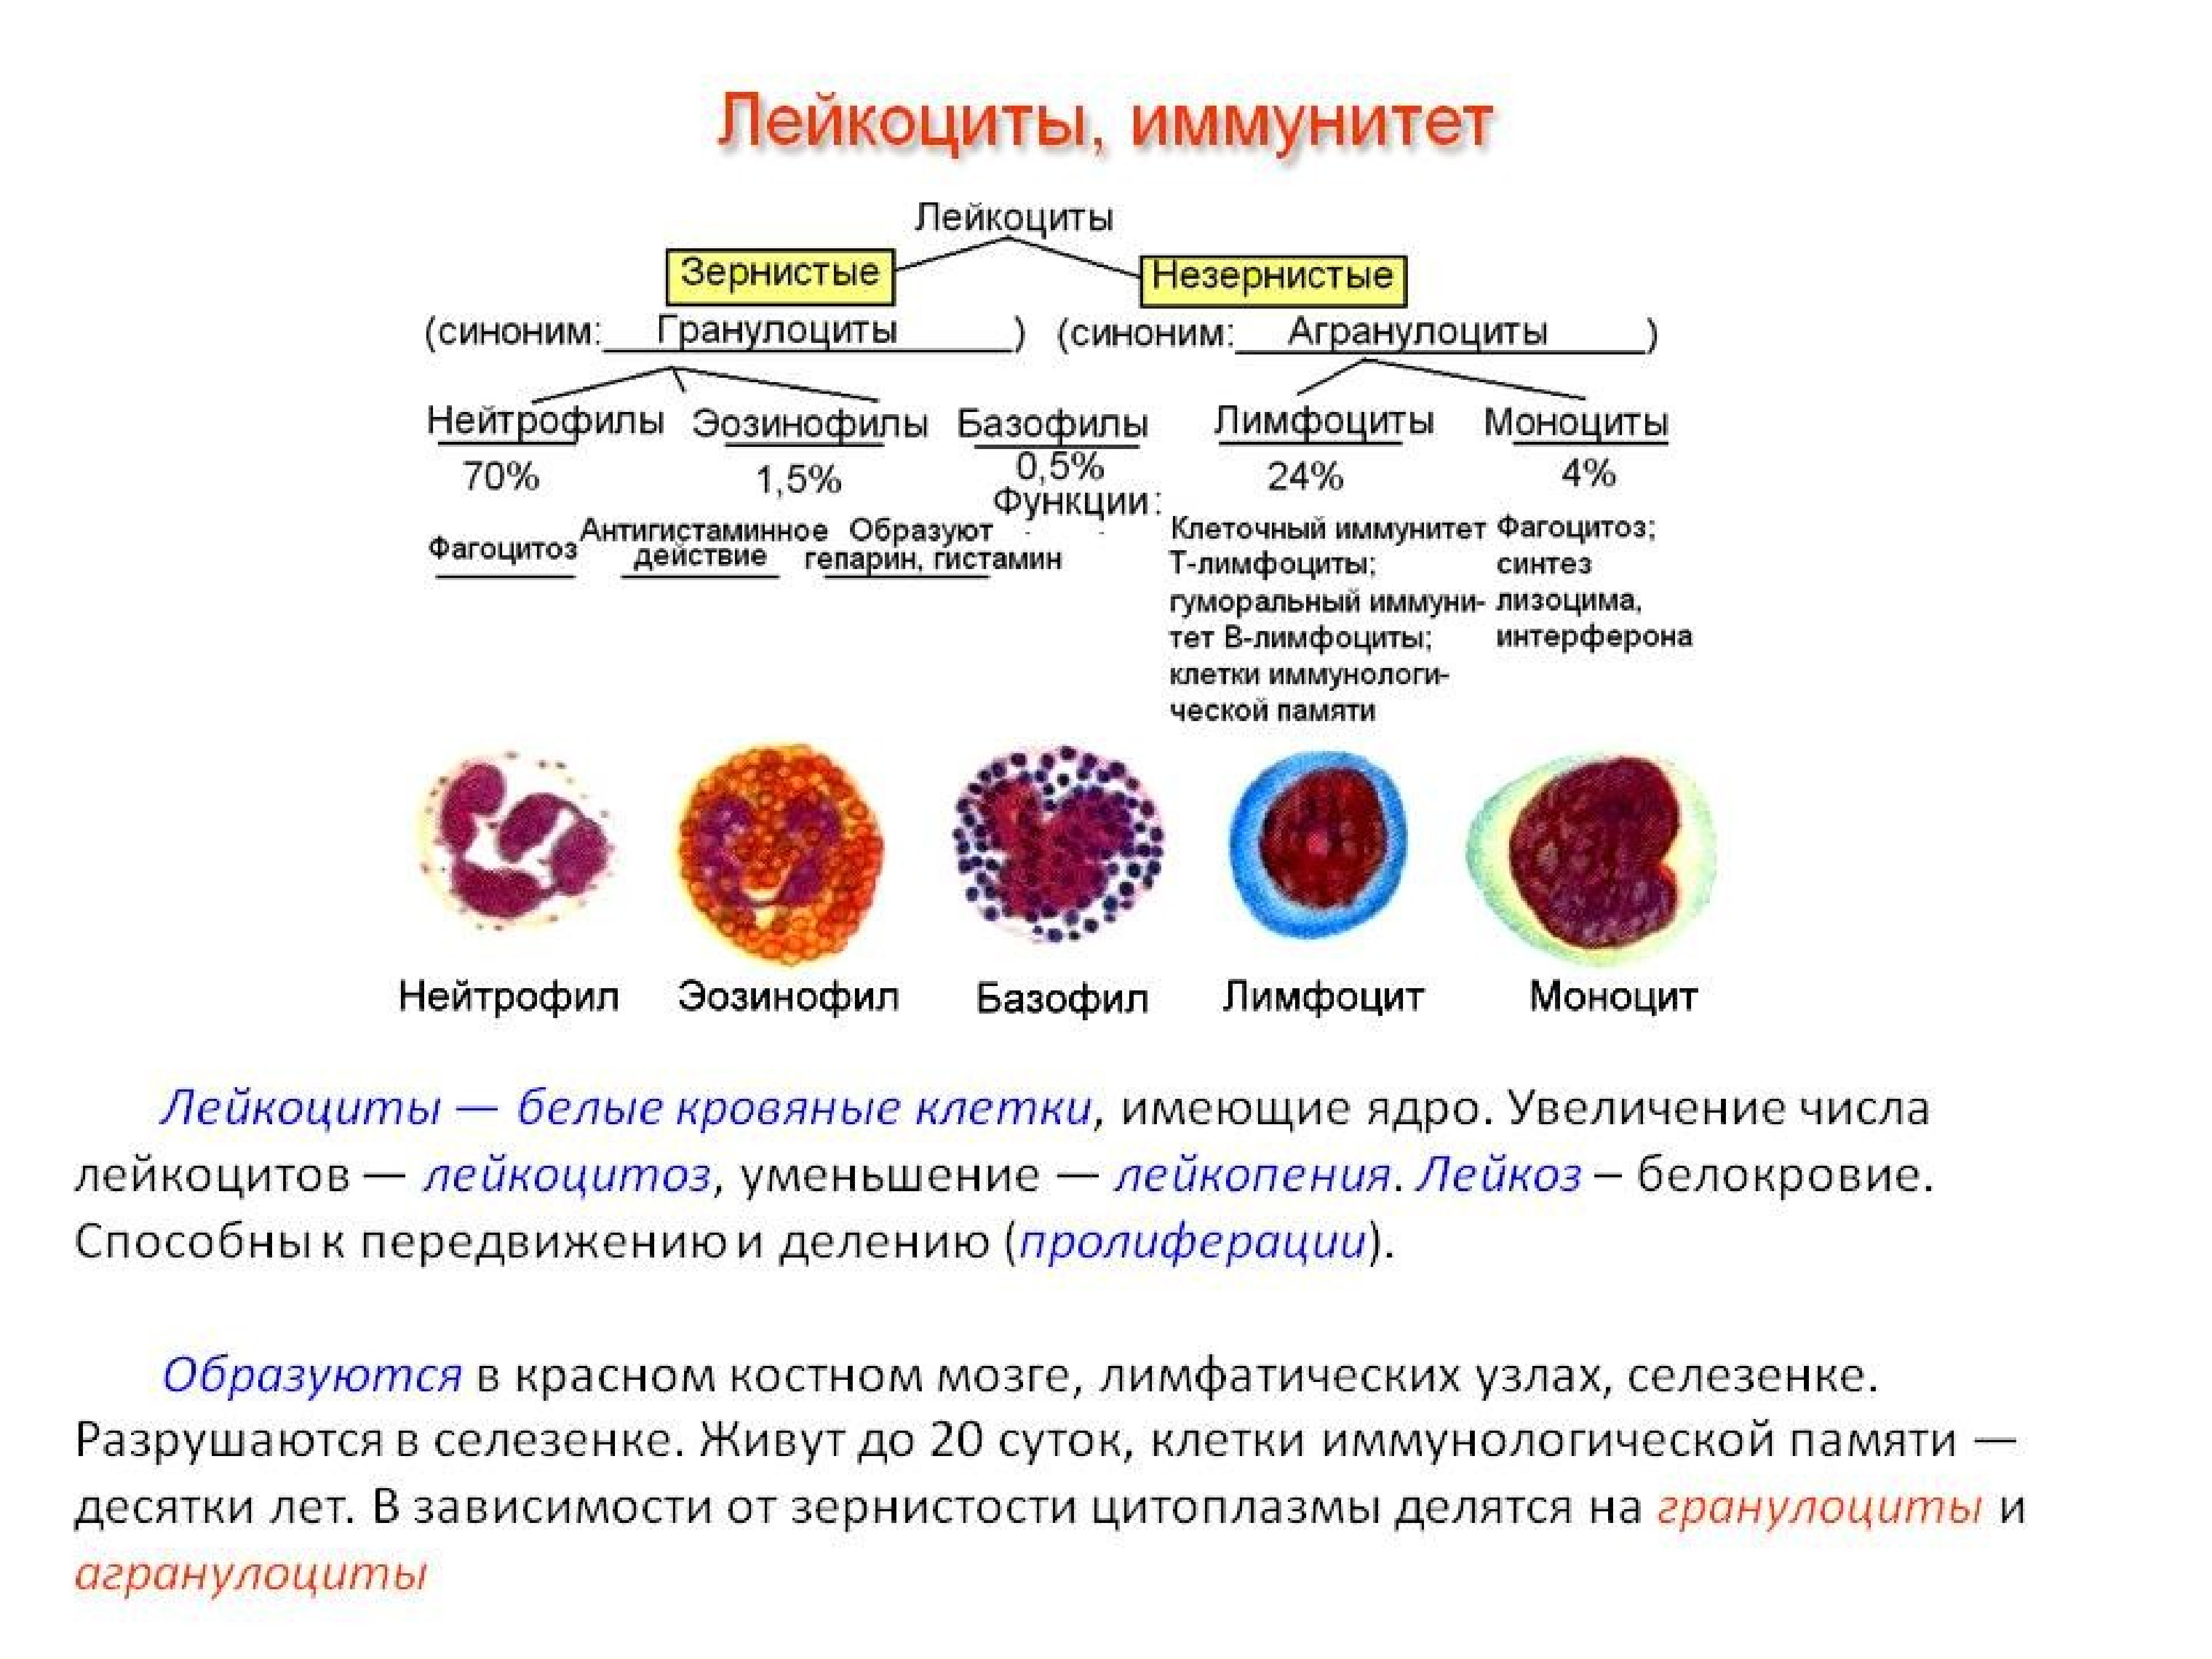 Селезенка лимфоциты. Функции нейтрофилы лимфоциты. Форменные элементы крови костный мозг. Клетки крови моноциты лимфоциты гранулоциты. Строение нейтрофилов крови.